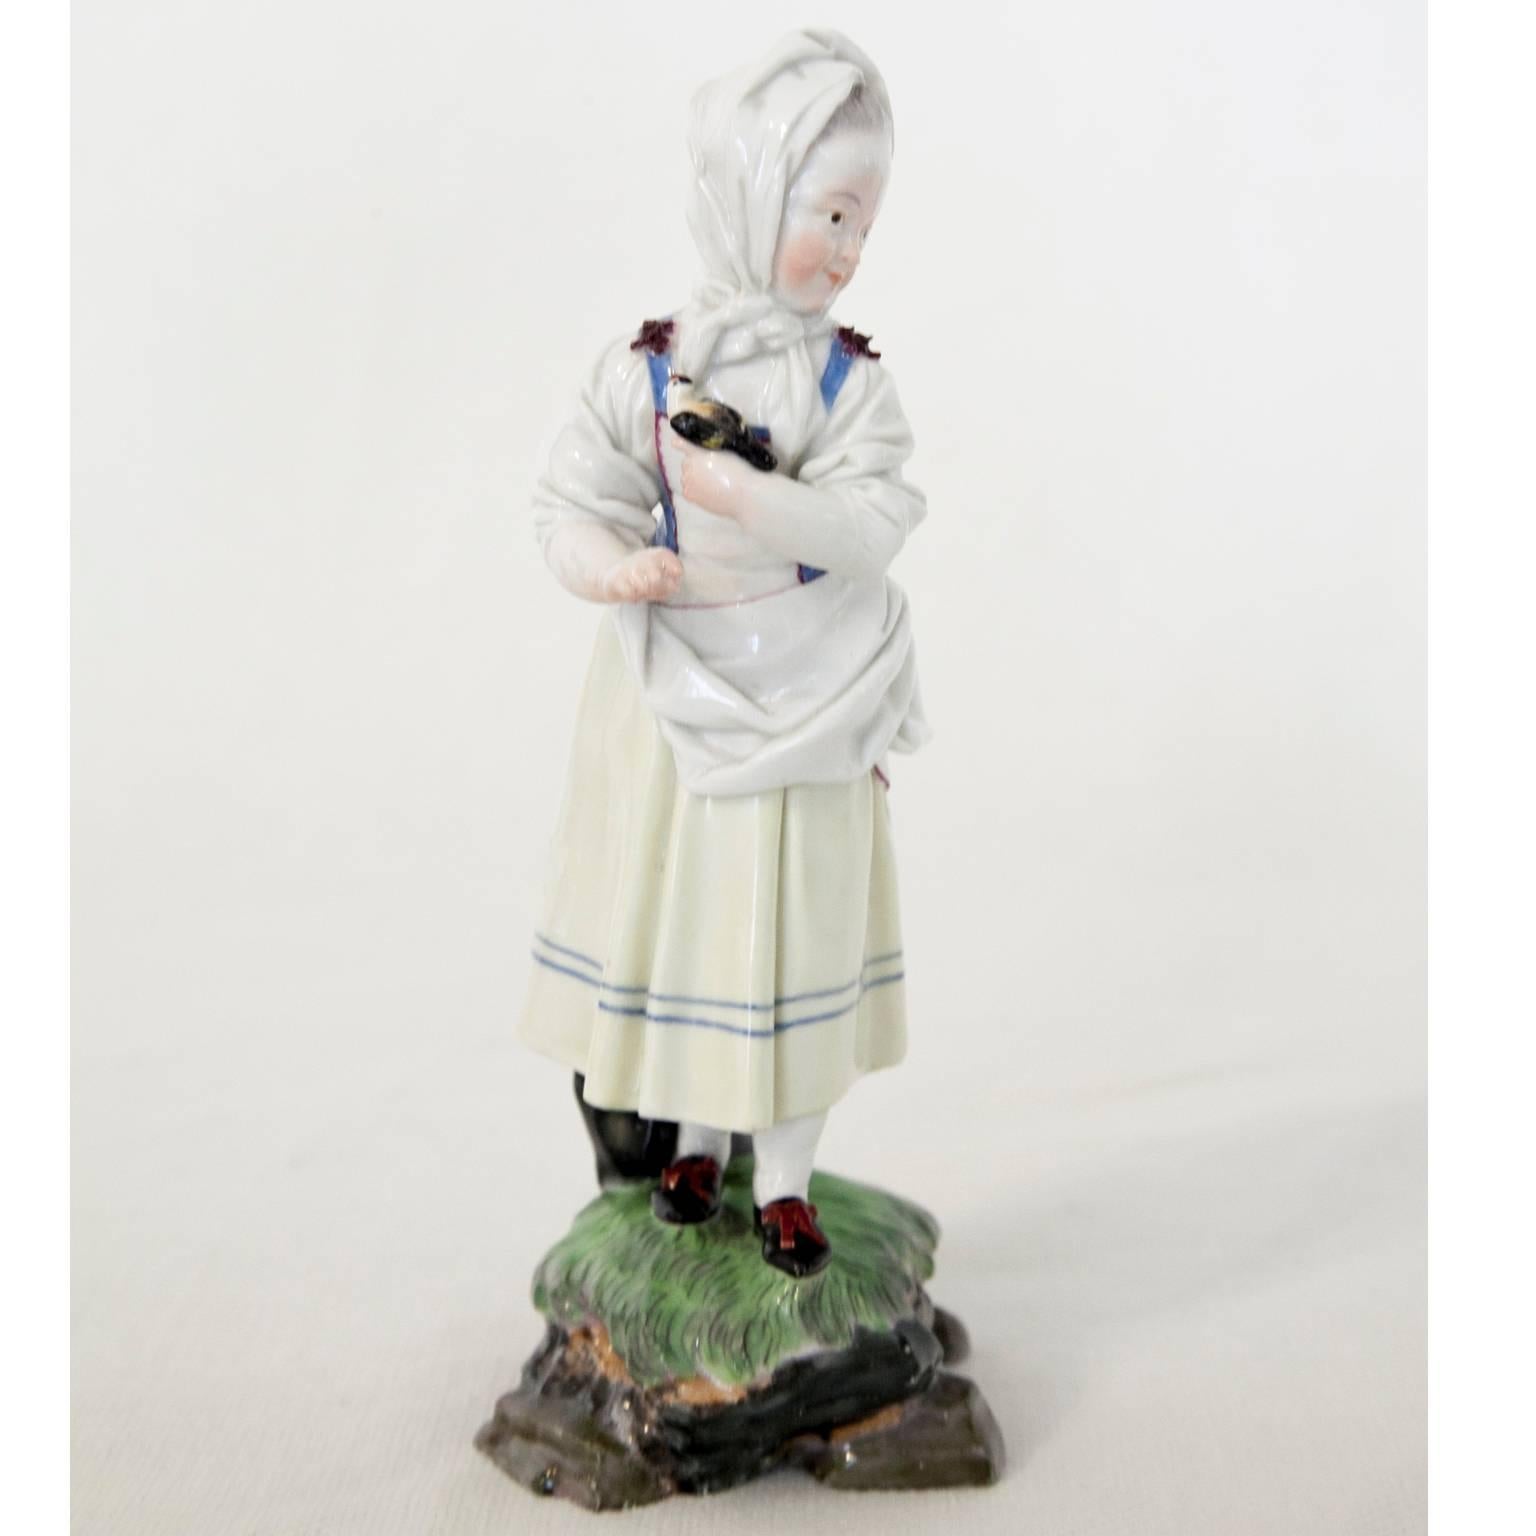 'Girl with Bonnet' Porcelain Figurine by Melchior, Höchst, 1770-1774 (Deutsch)